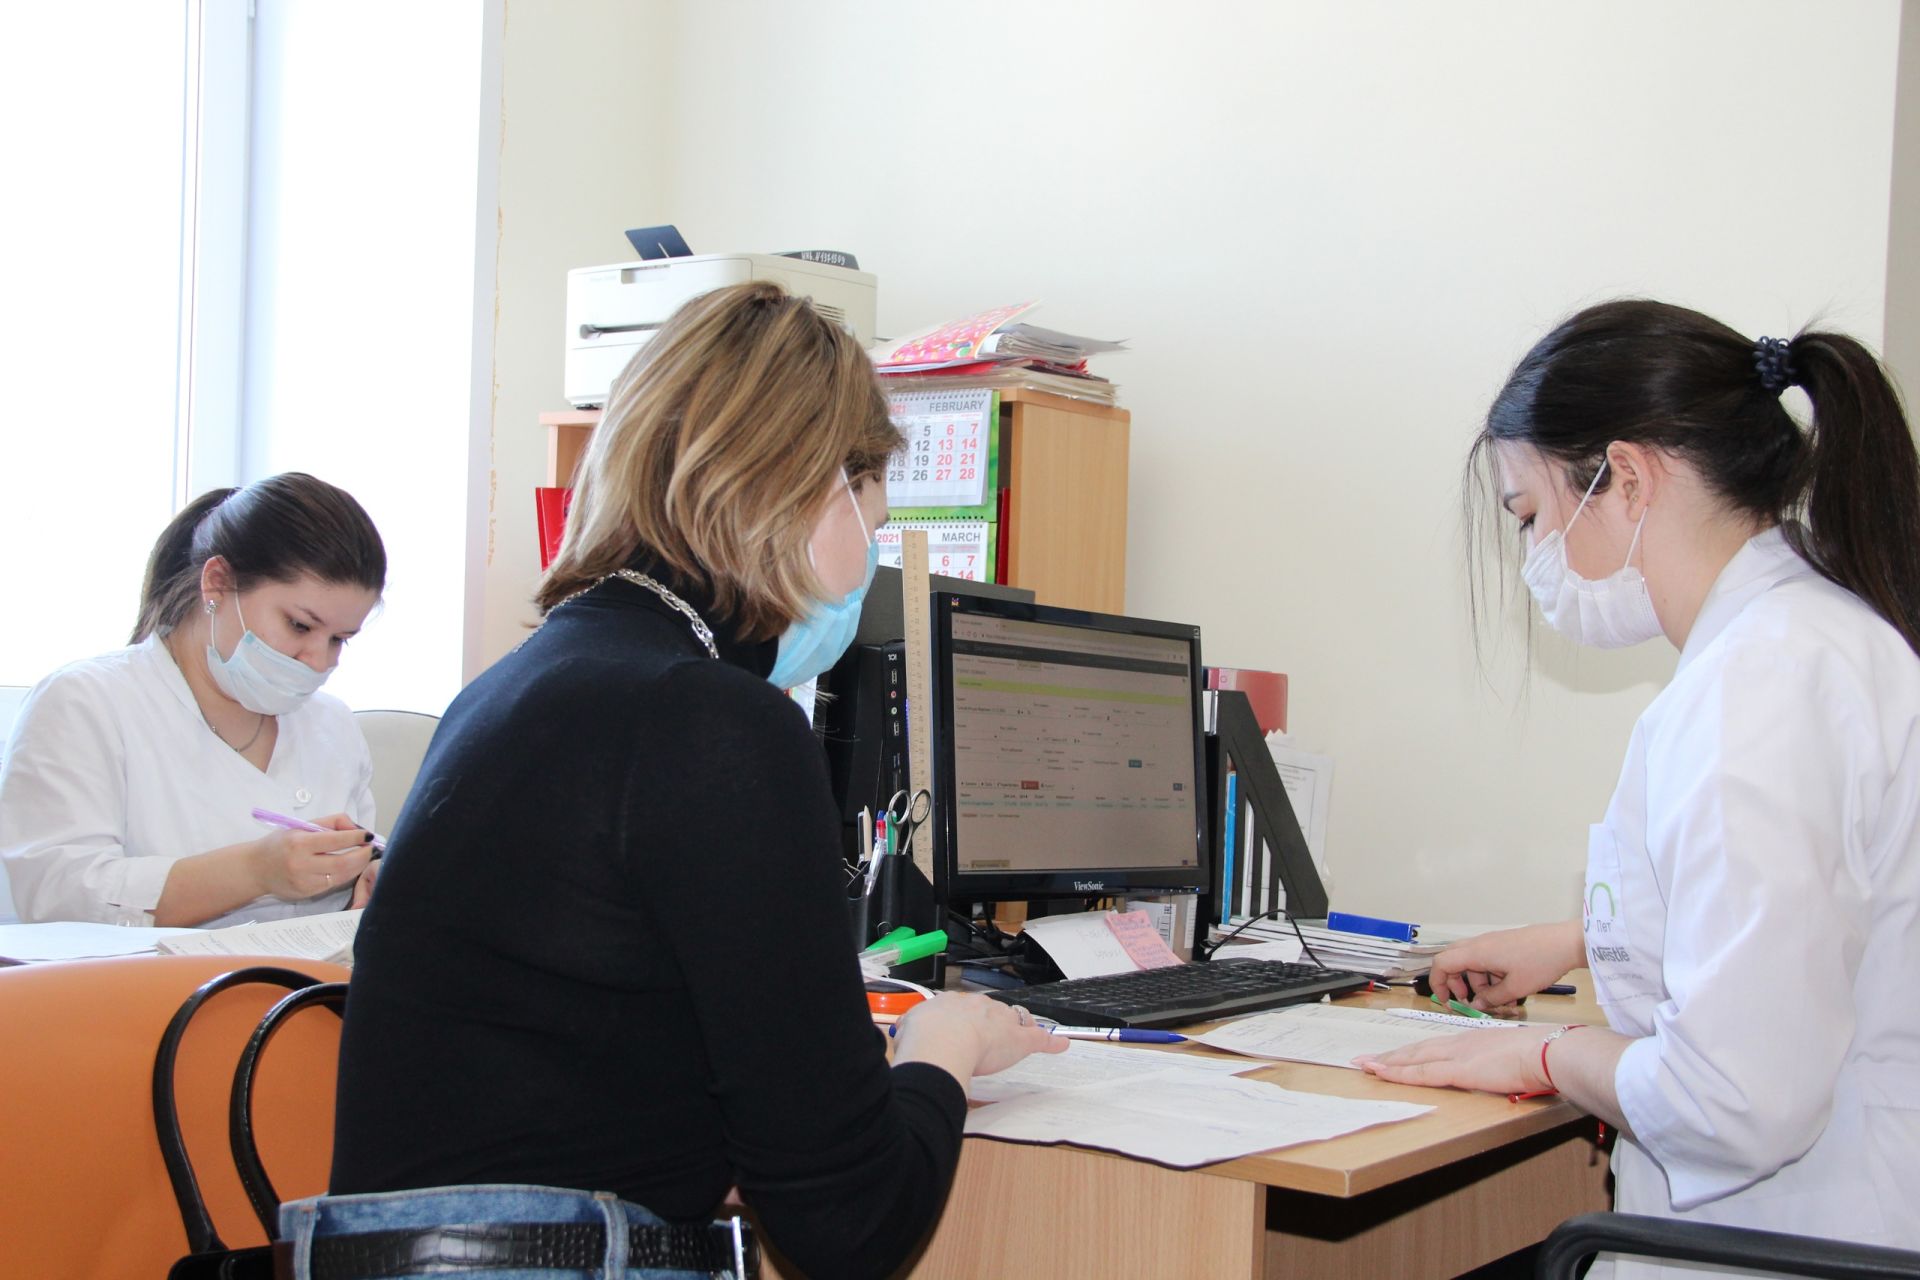 Главный редактор «Заинск-информ» вакцинировалась от коронавируса